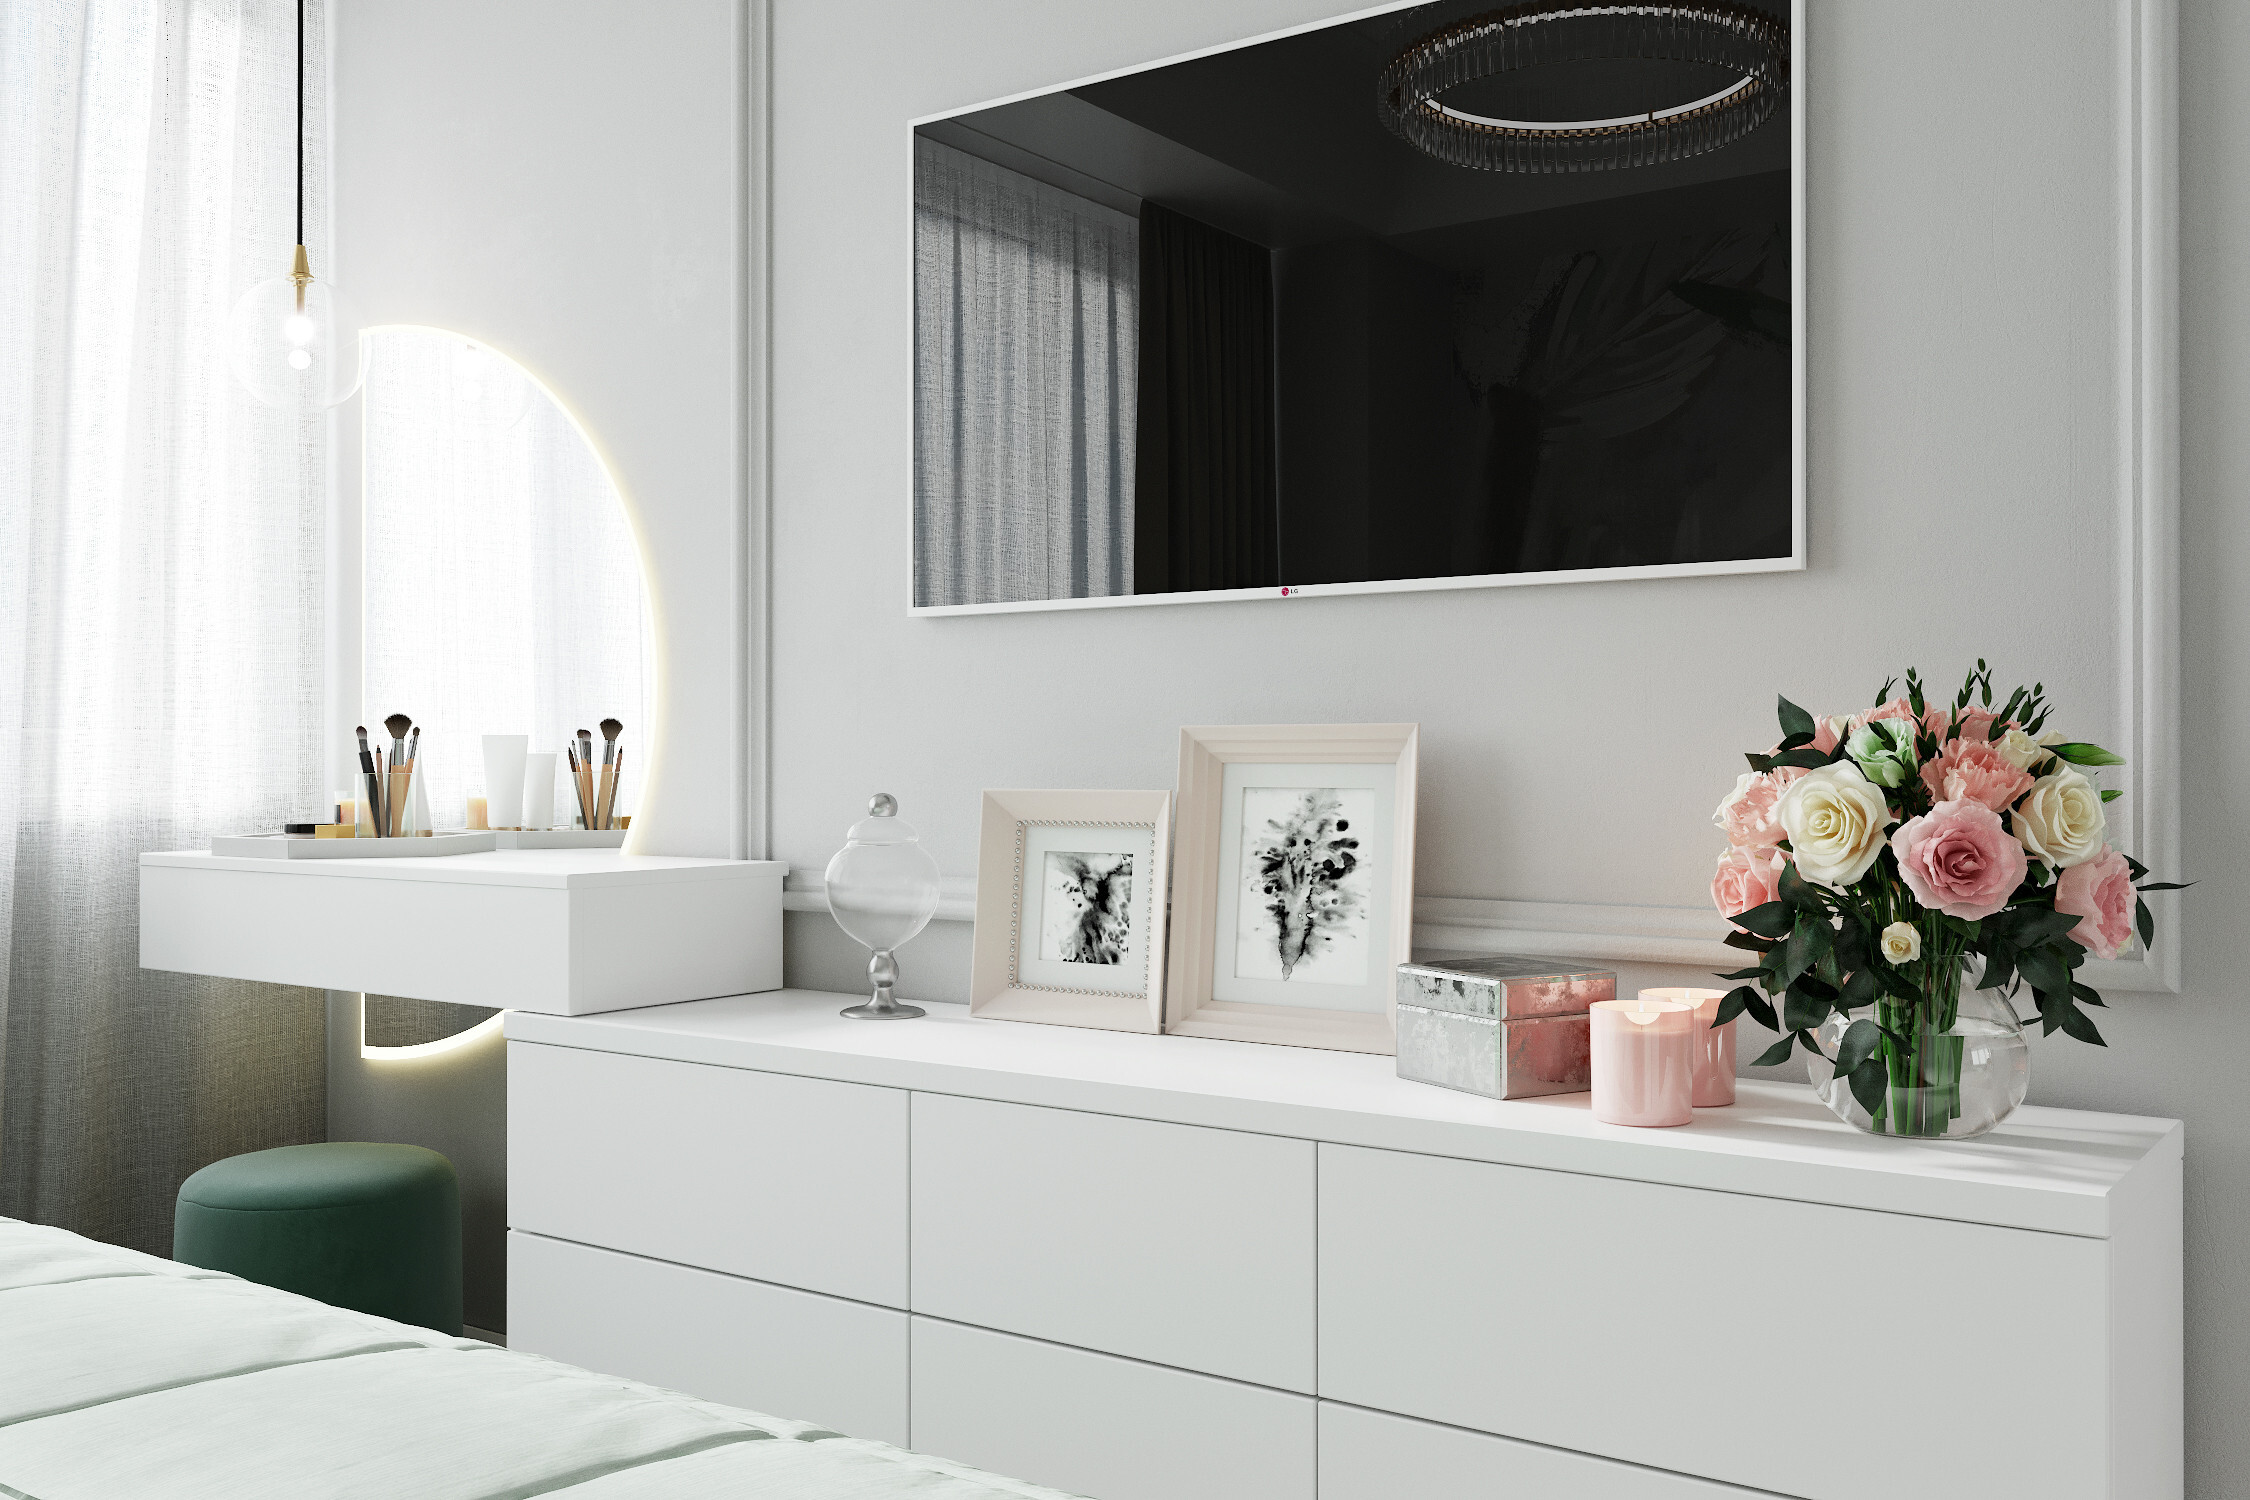 Интерьер ванной с рейками с подсветкой, подсветкой настенной, подсветкой светодиодной и светильниками над кроватью в современном стиле